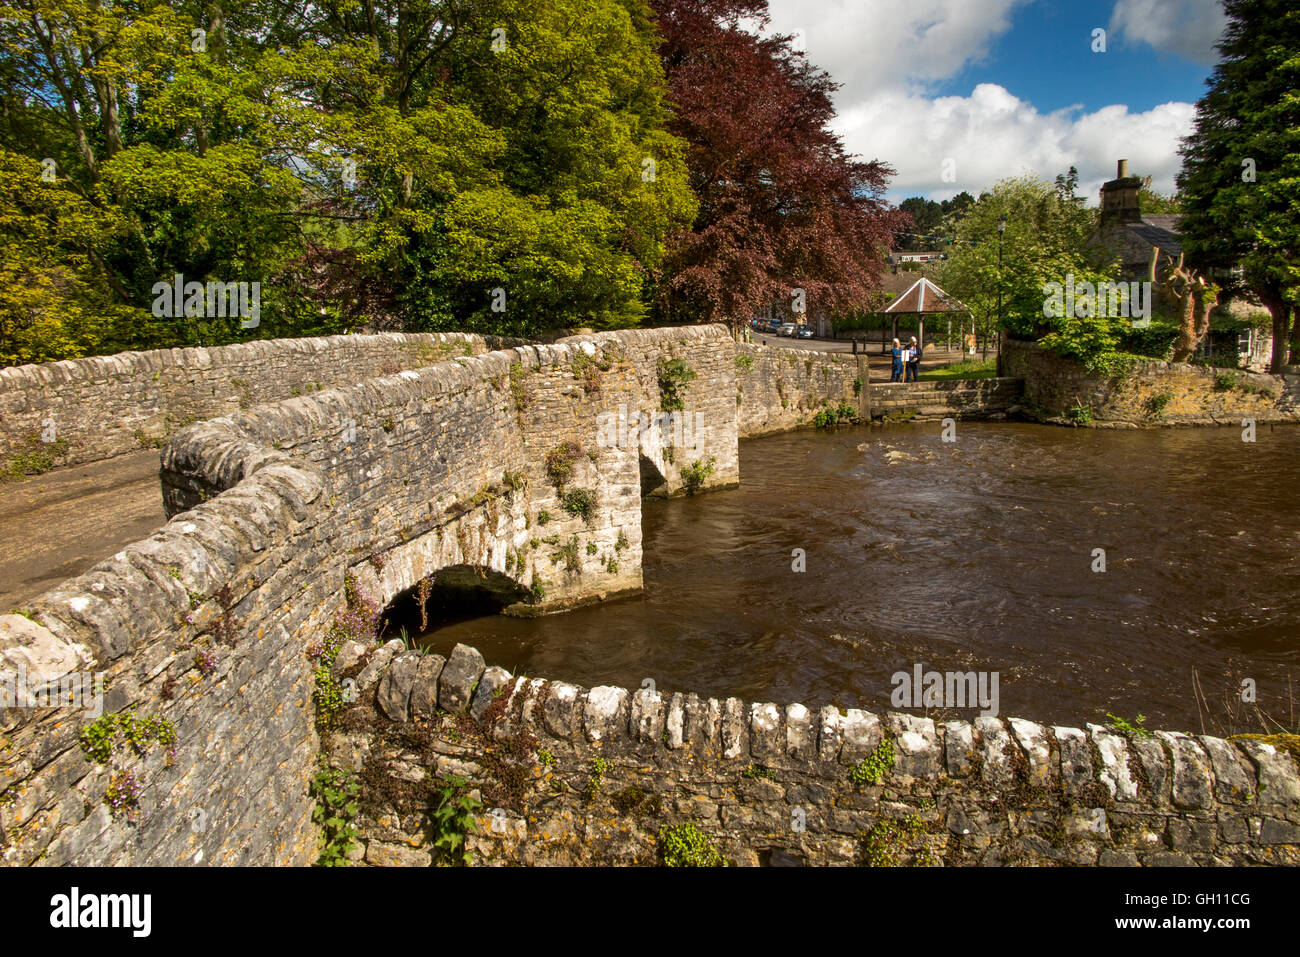 Regno Unito, Inghilterra, Derbyshire, Ashford nell'acqua, sheepwash ponte sul fiume Wye Foto Stock